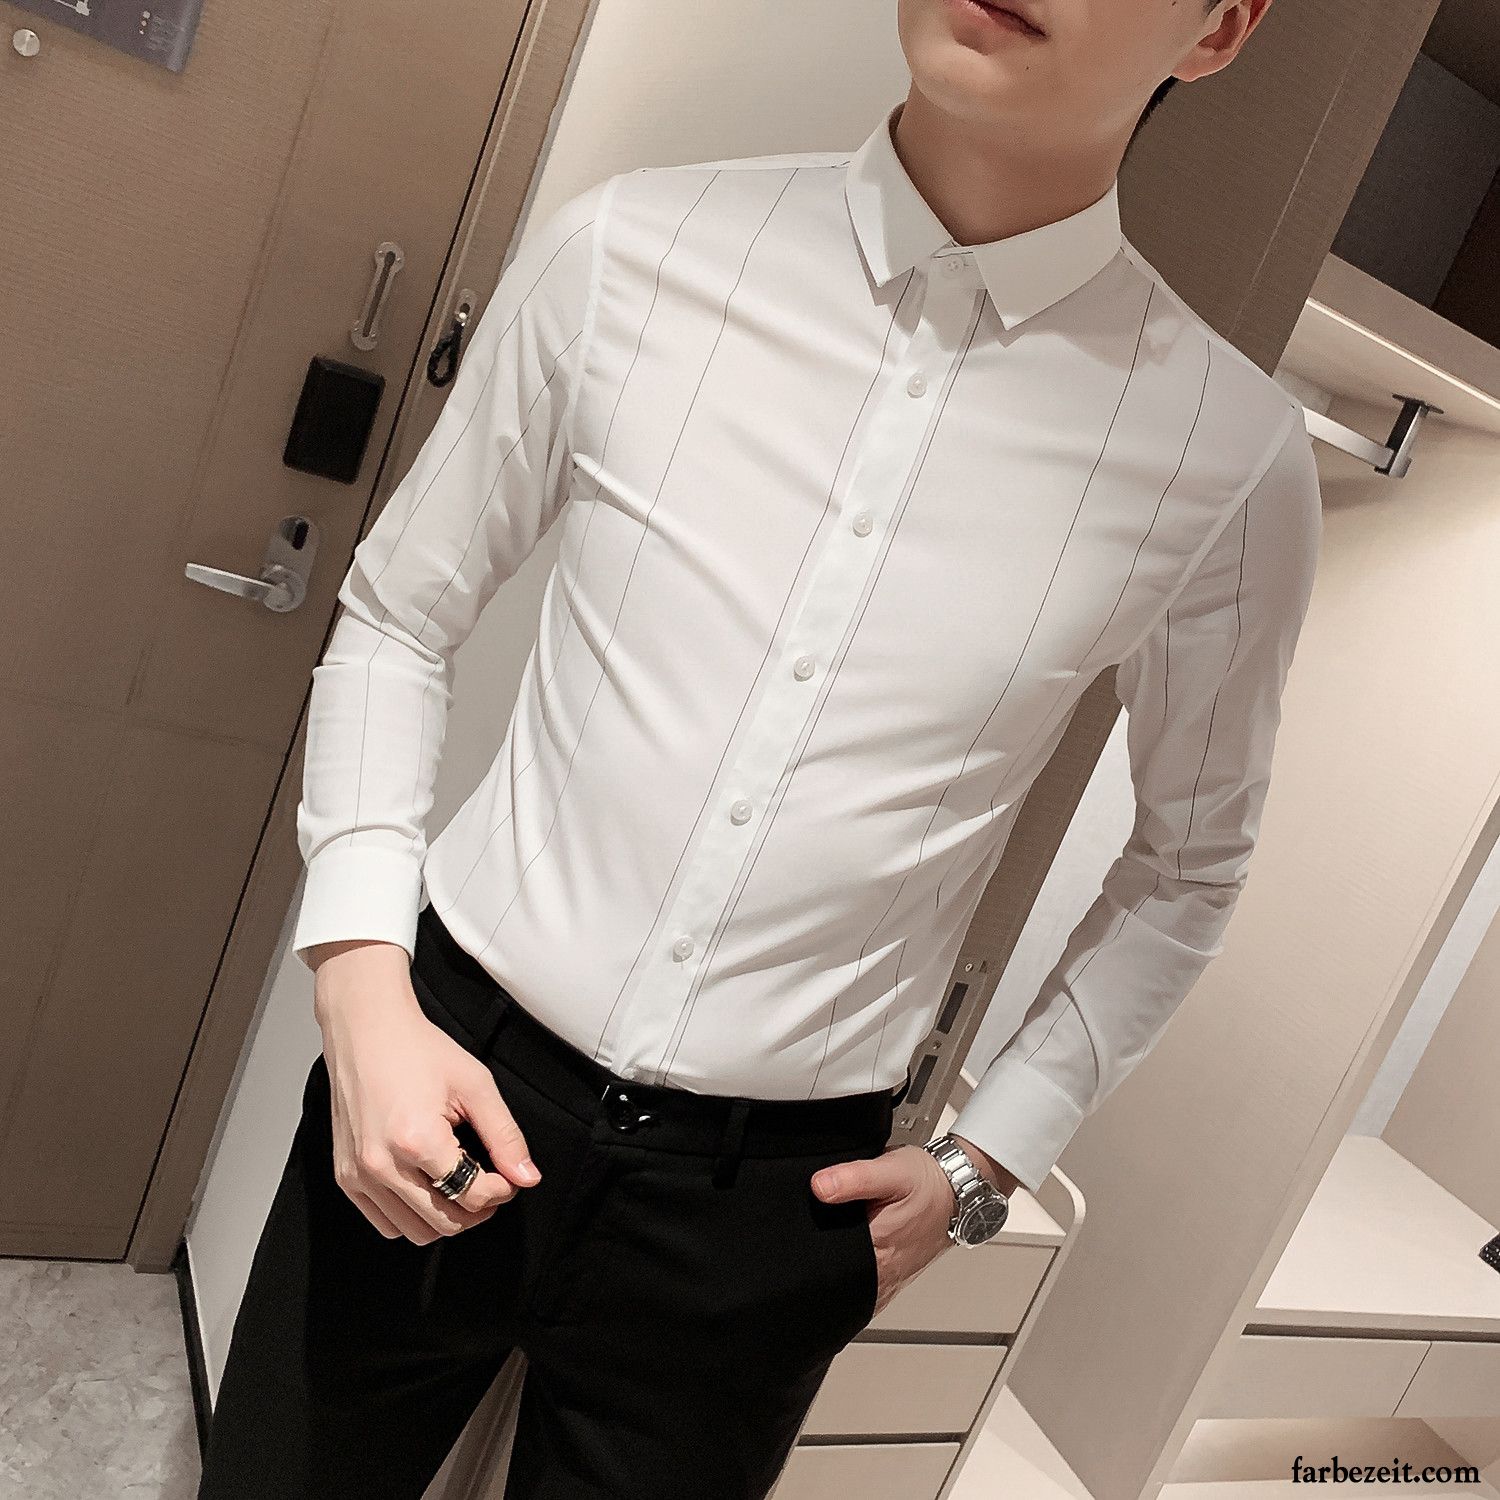 Hemden Herren Streifen Mode Unteres Hemd Lange Ärmel Trend Schlank Weiß